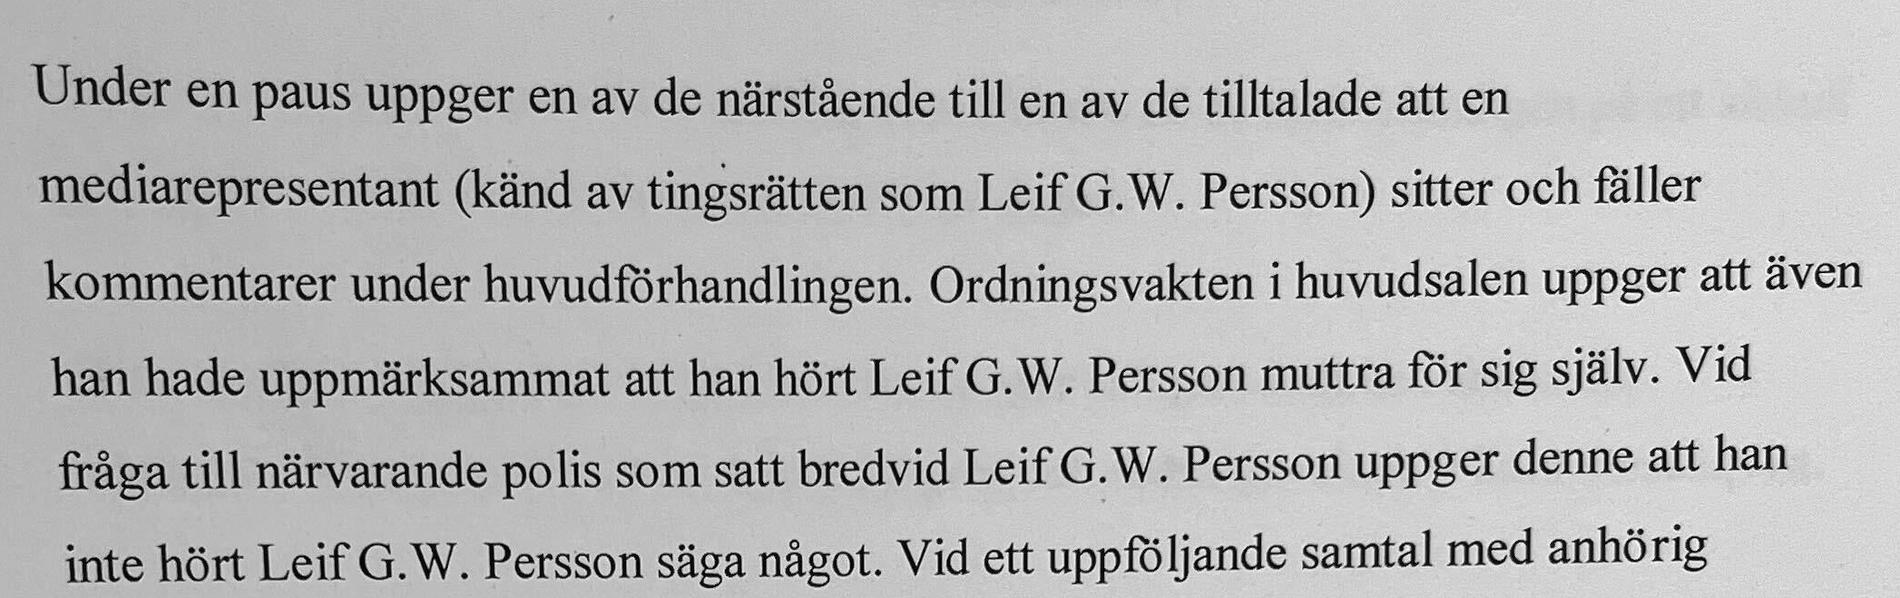 Leif GW Persson har en egen sida i protokollet från rättegången. 